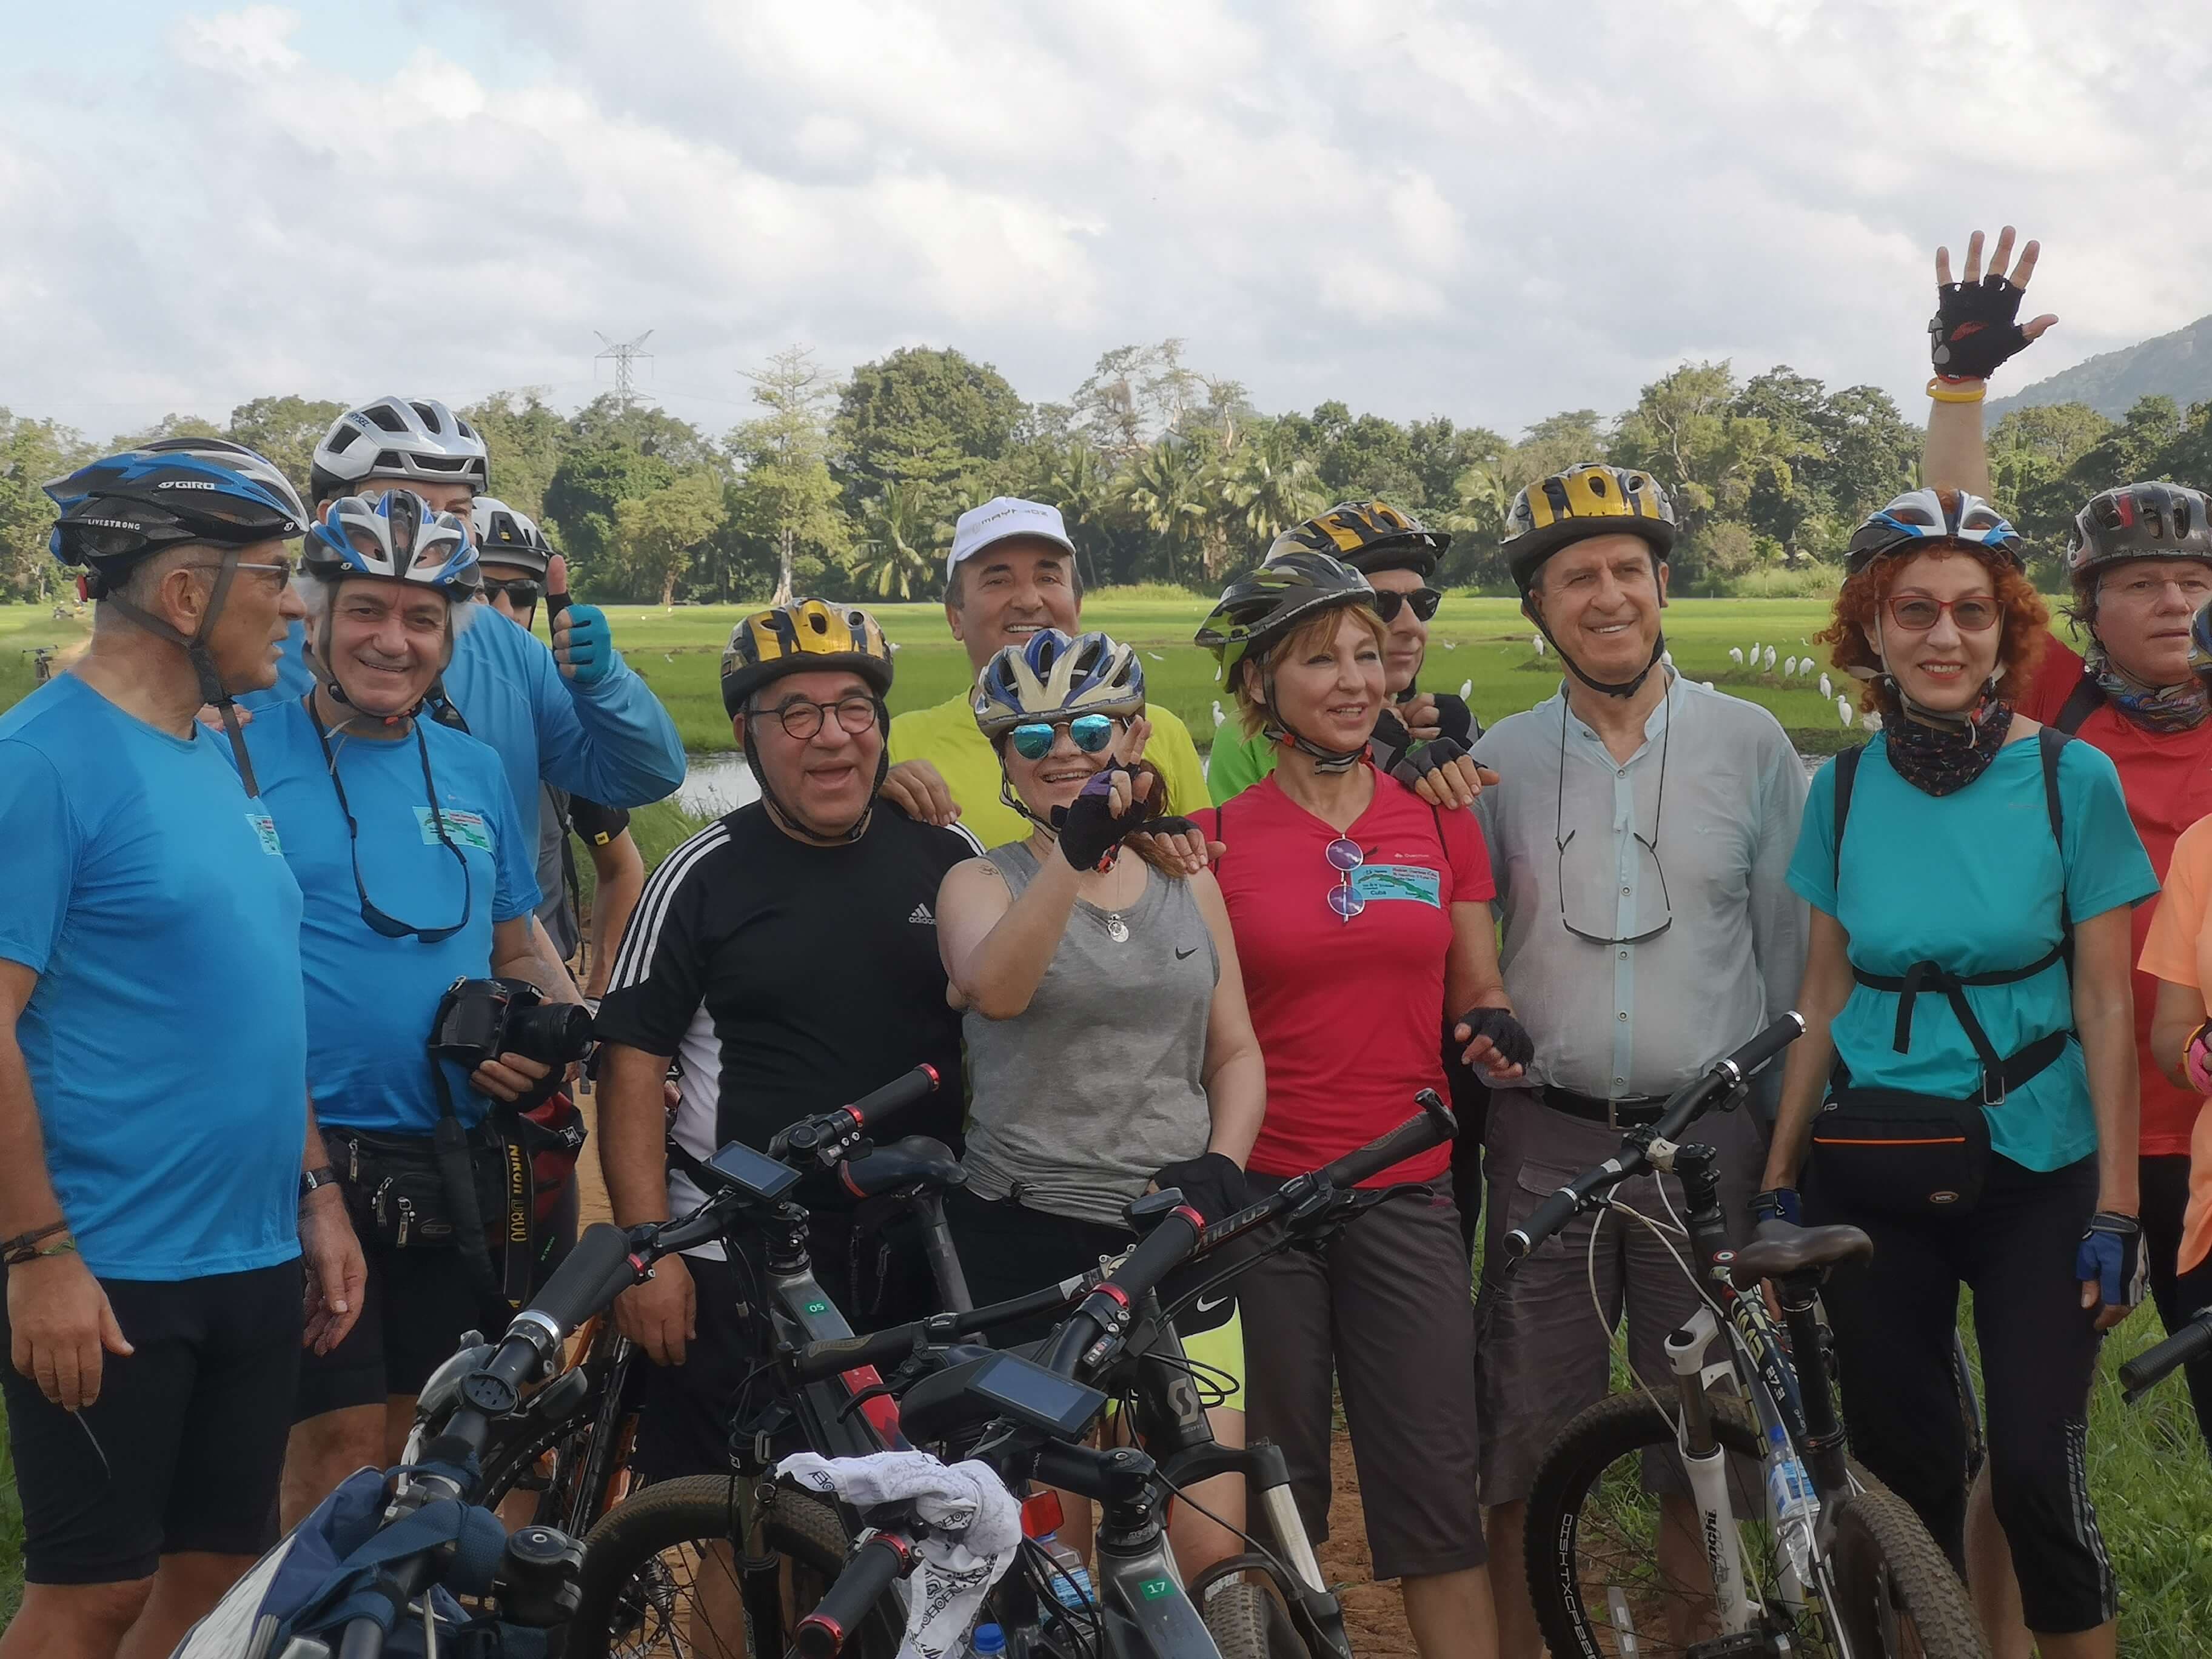 Una foto de grupo de turistas durante el recorrido en bicicleta por el campo de Colombo, Sri Lanka.